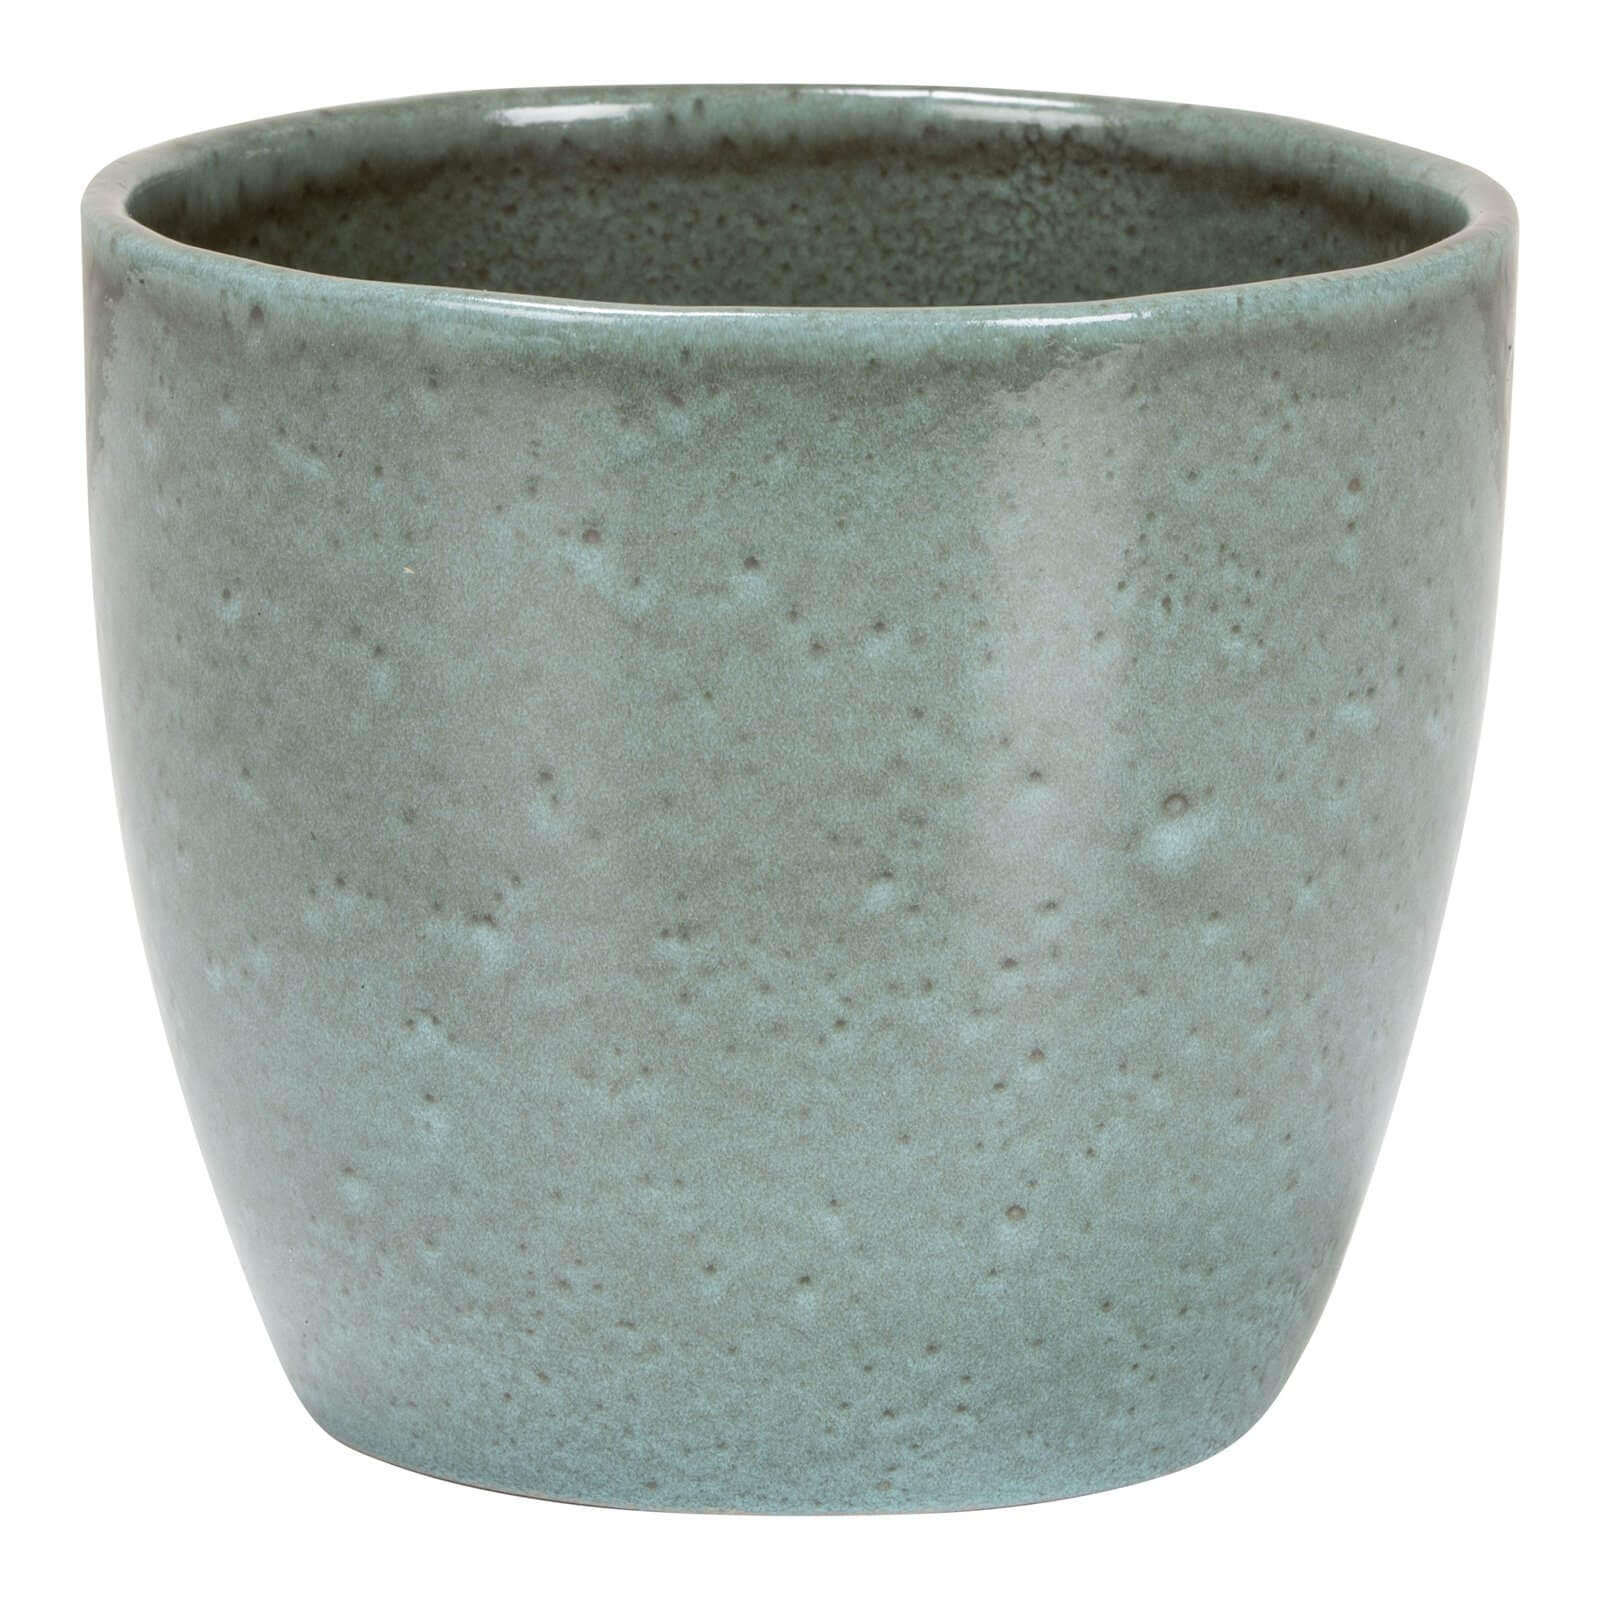 Scottish Moss Ceramic Cover Pot -  14cm